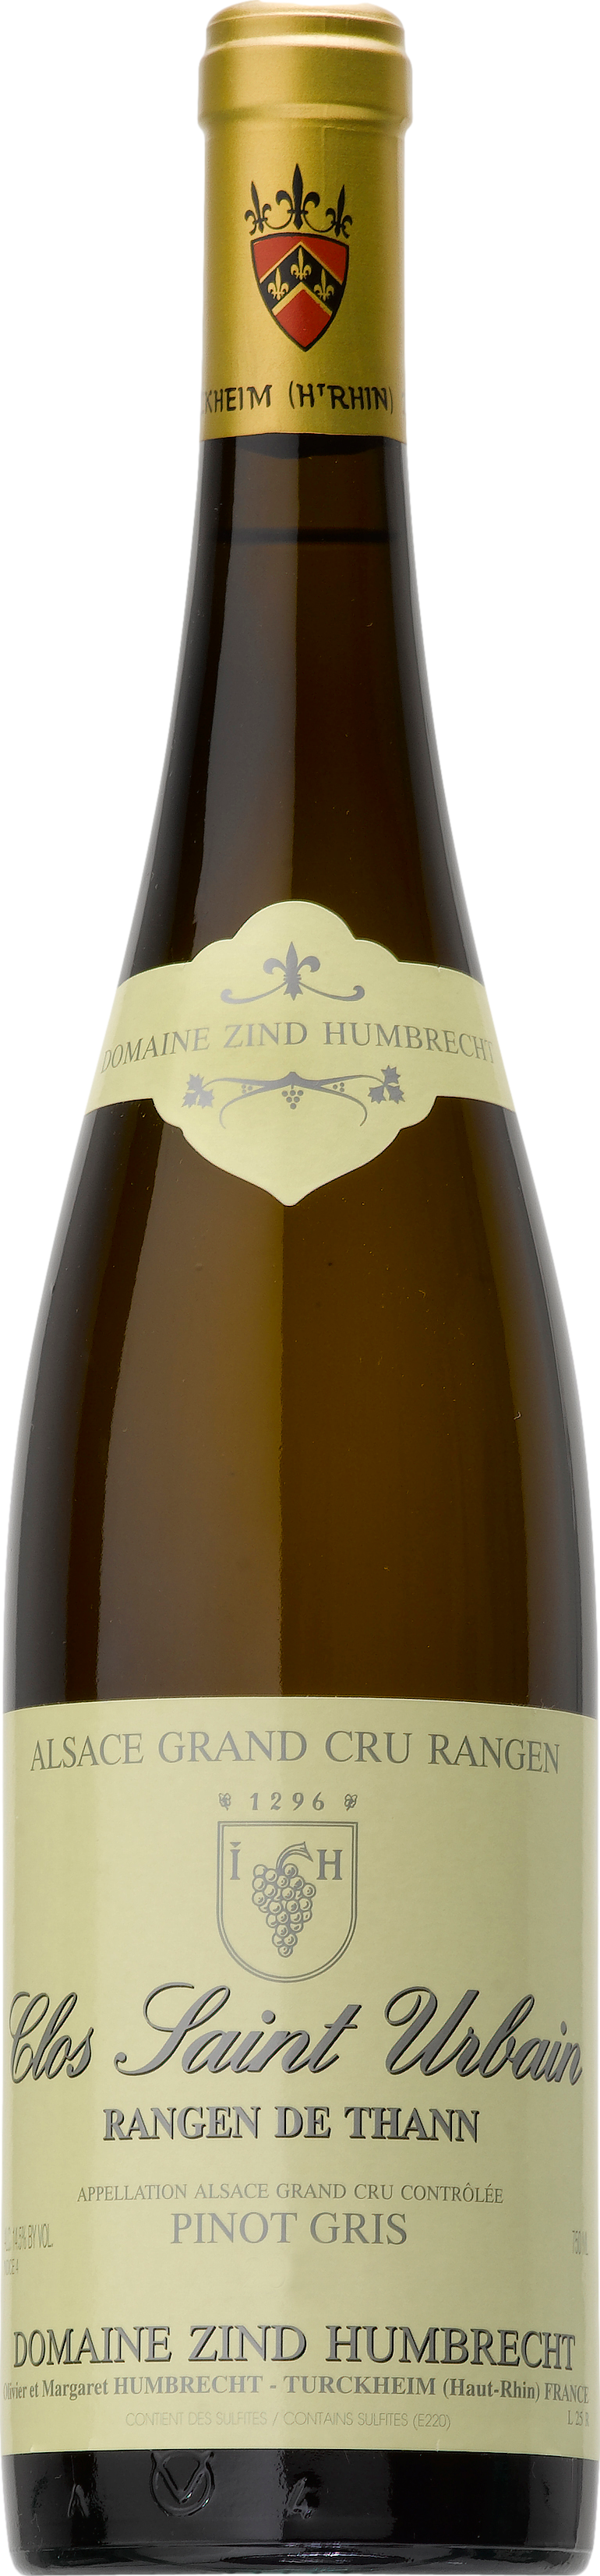 Domaine Zind-Humbrecht Pinot Gris Grand Cru Rangen de Thann Clos Saint Urbain 2016 Domaine Zind-Humbrecht 8wines DACH